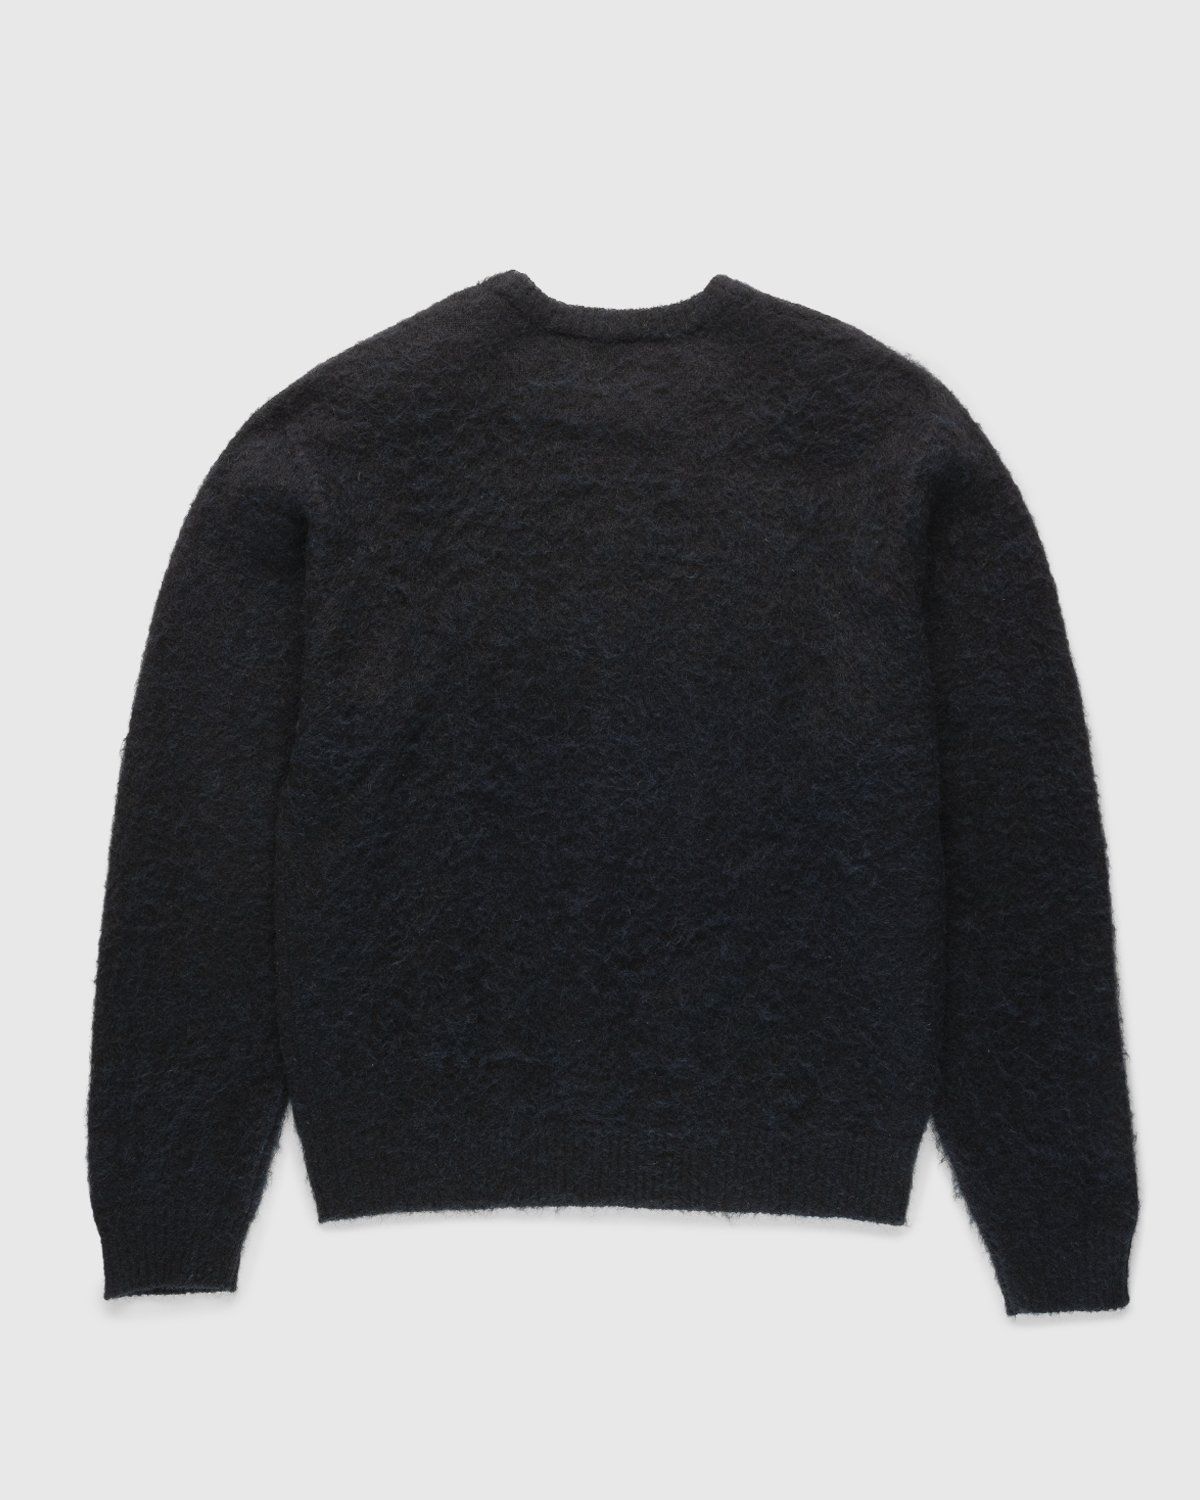 Highsnobiety – Mono Alpaca Sweater Black - Crewnecks - Black - Image 2